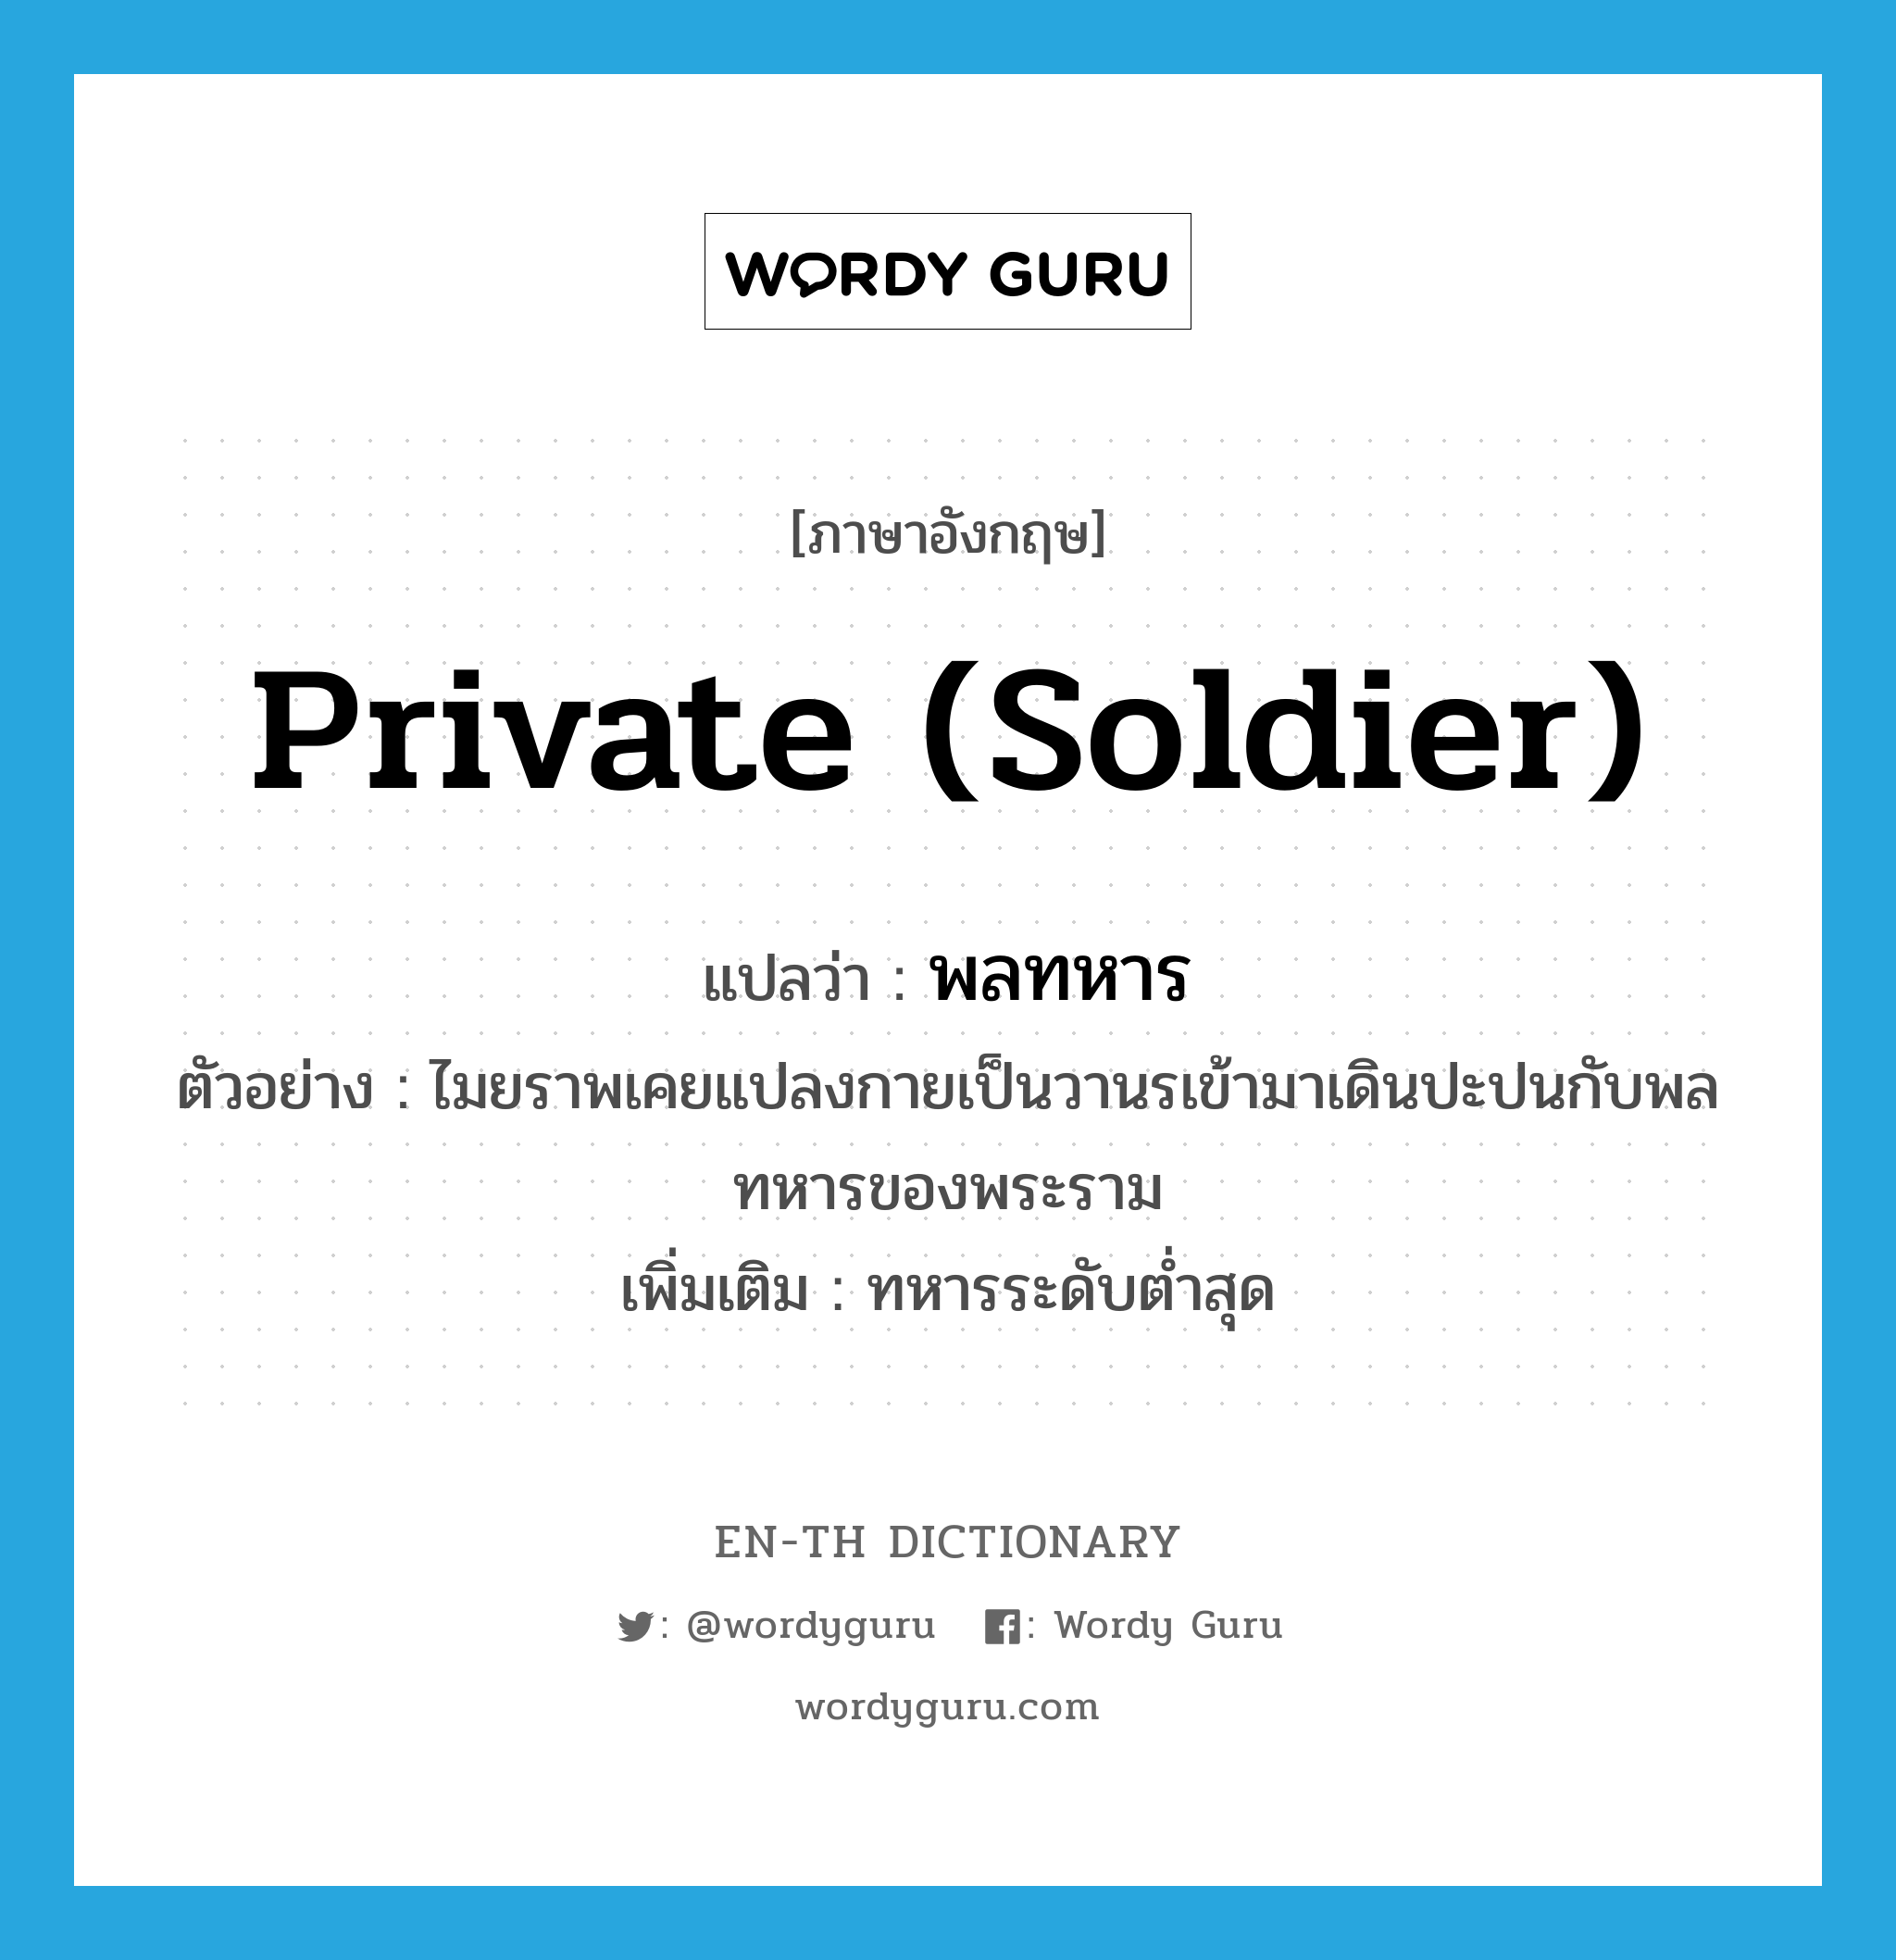 private (soldier) แปลว่า?, คำศัพท์ภาษาอังกฤษ private (soldier) แปลว่า พลทหาร ประเภท N ตัวอย่าง ไมยราพเคยแปลงกายเป็นวานรเข้ามาเดินปะปนกับพลทหารของพระราม เพิ่มเติม ทหารระดับต่ำสุด หมวด N